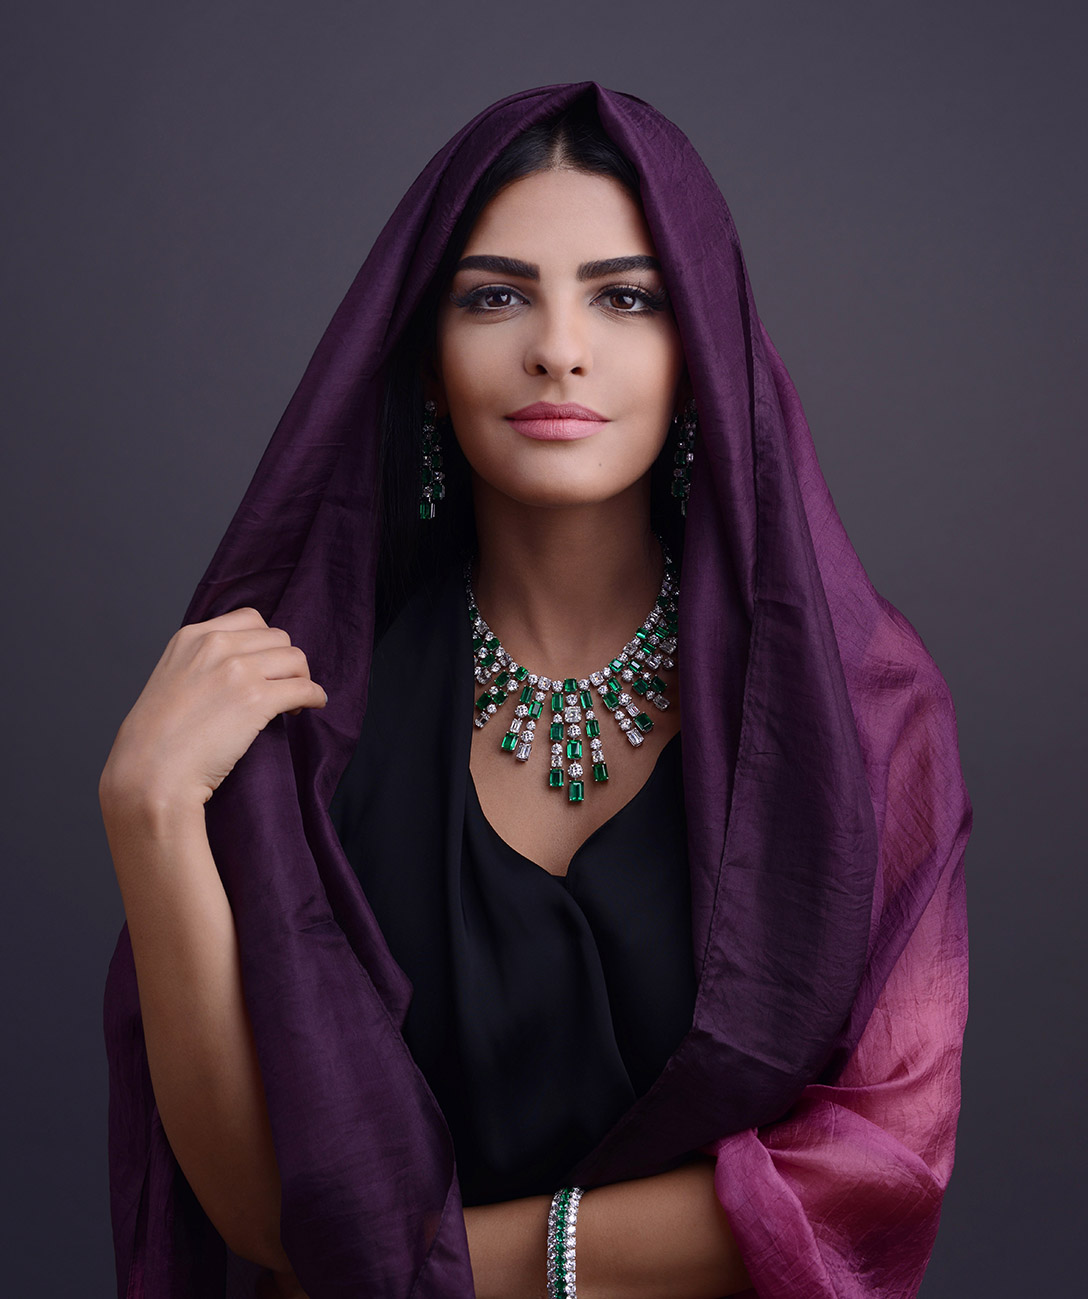 3-saudiskata-princeza-amira-e-novata-modna-ikona-www.kafepauza.mk_